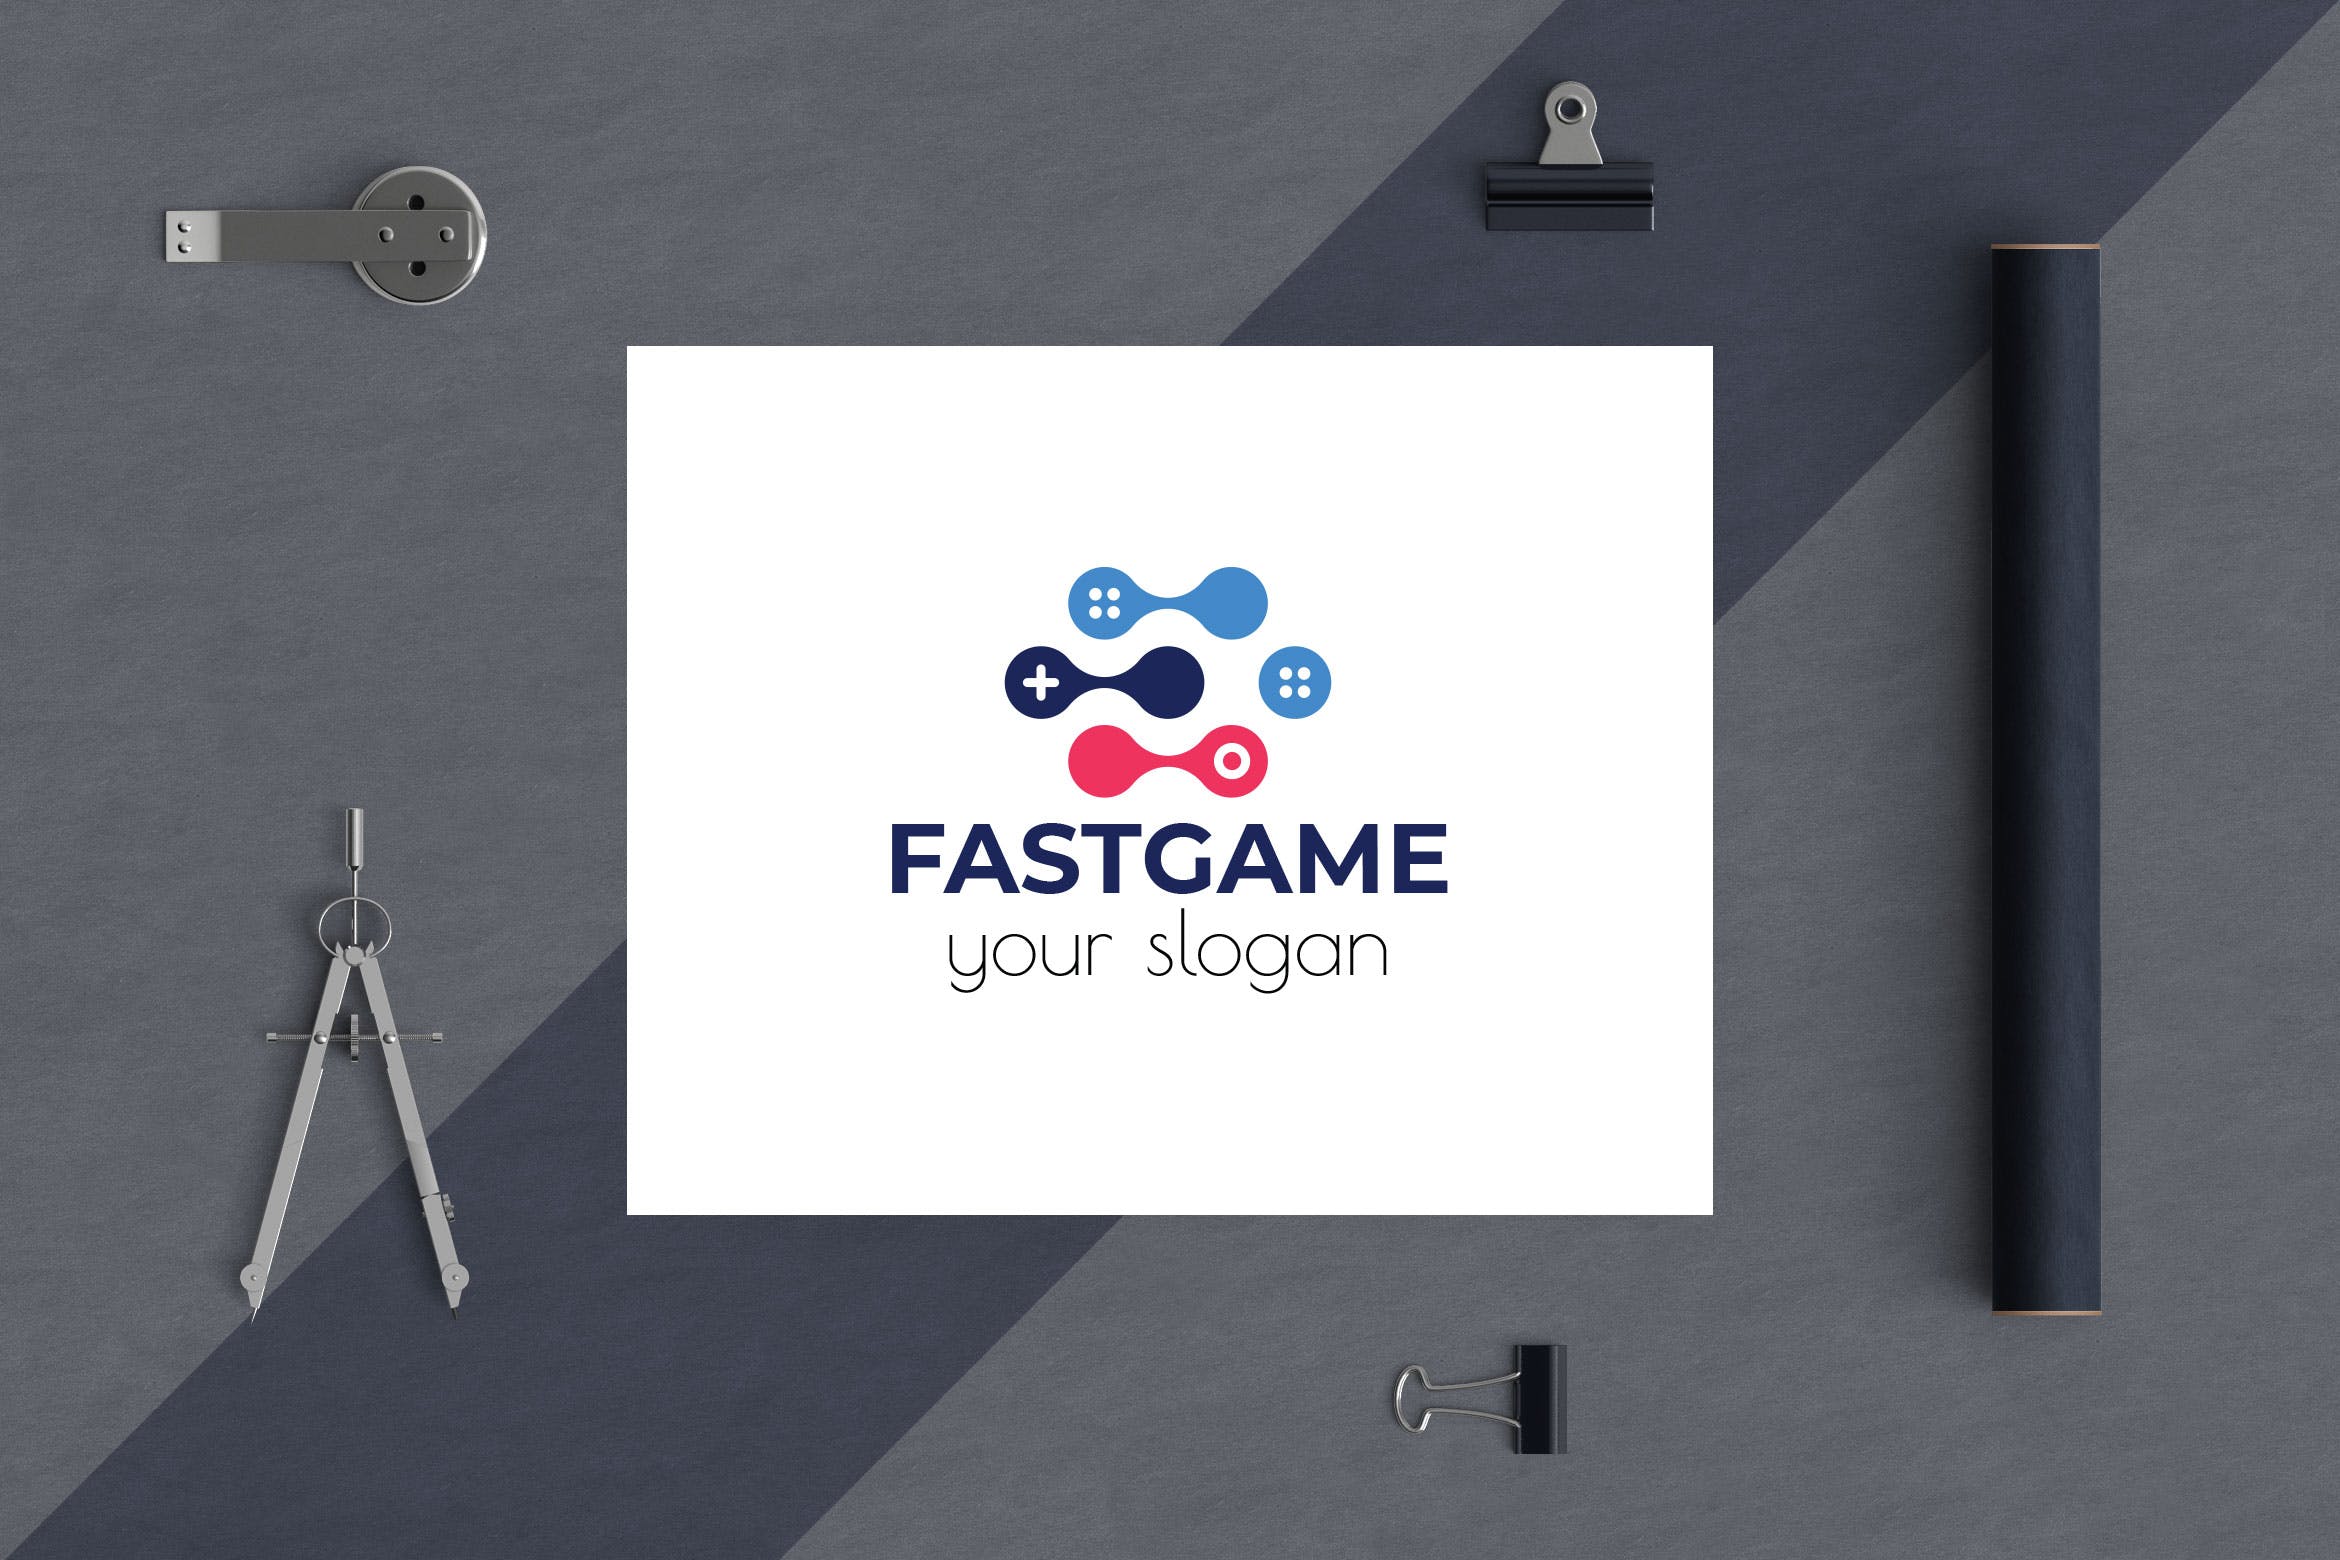 游戏加速器Logo设计素材库精选模板 Fast Game Business Logo Template插图